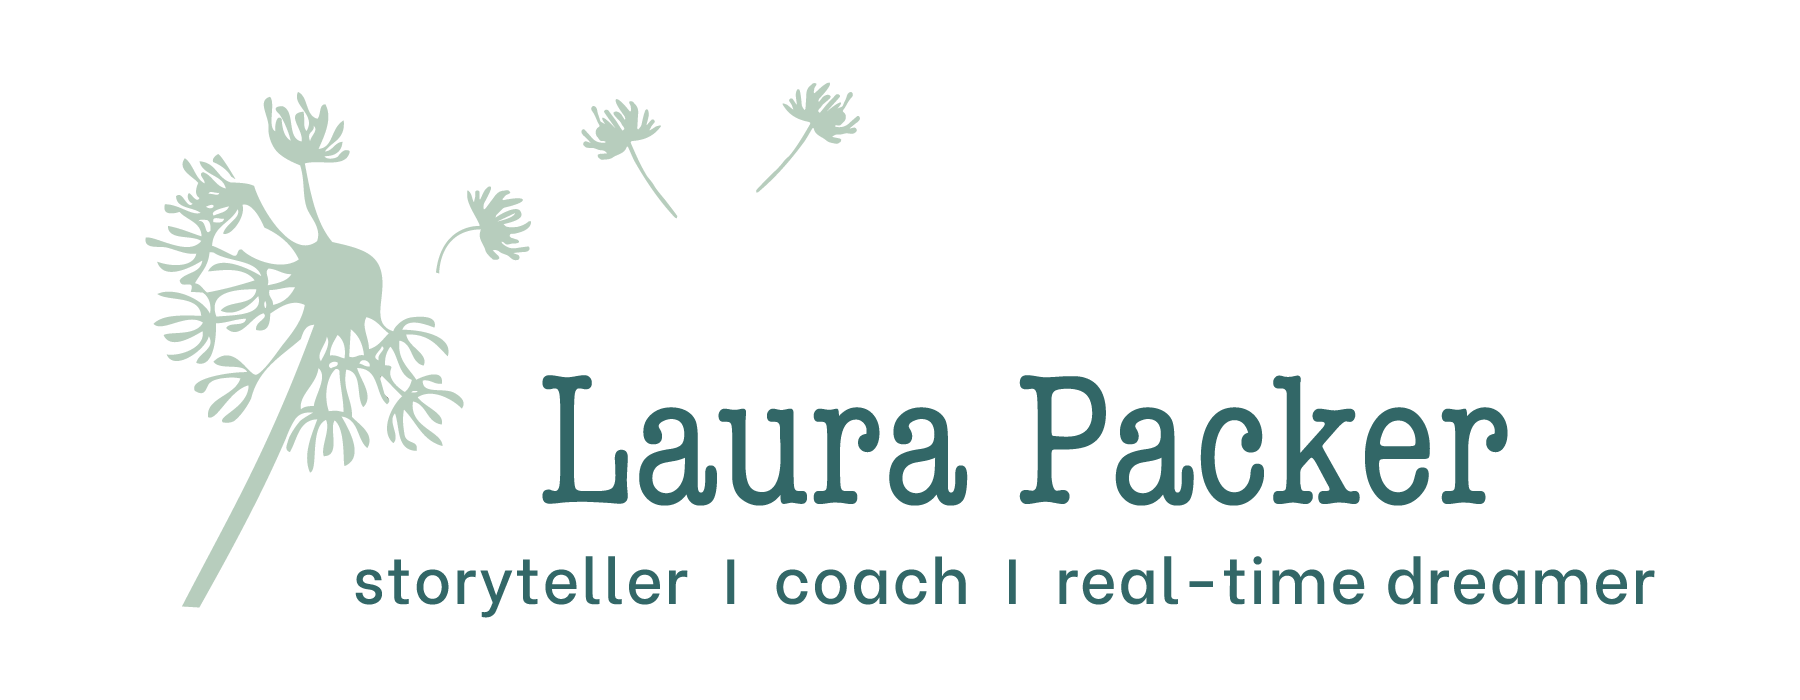 Laura Packer